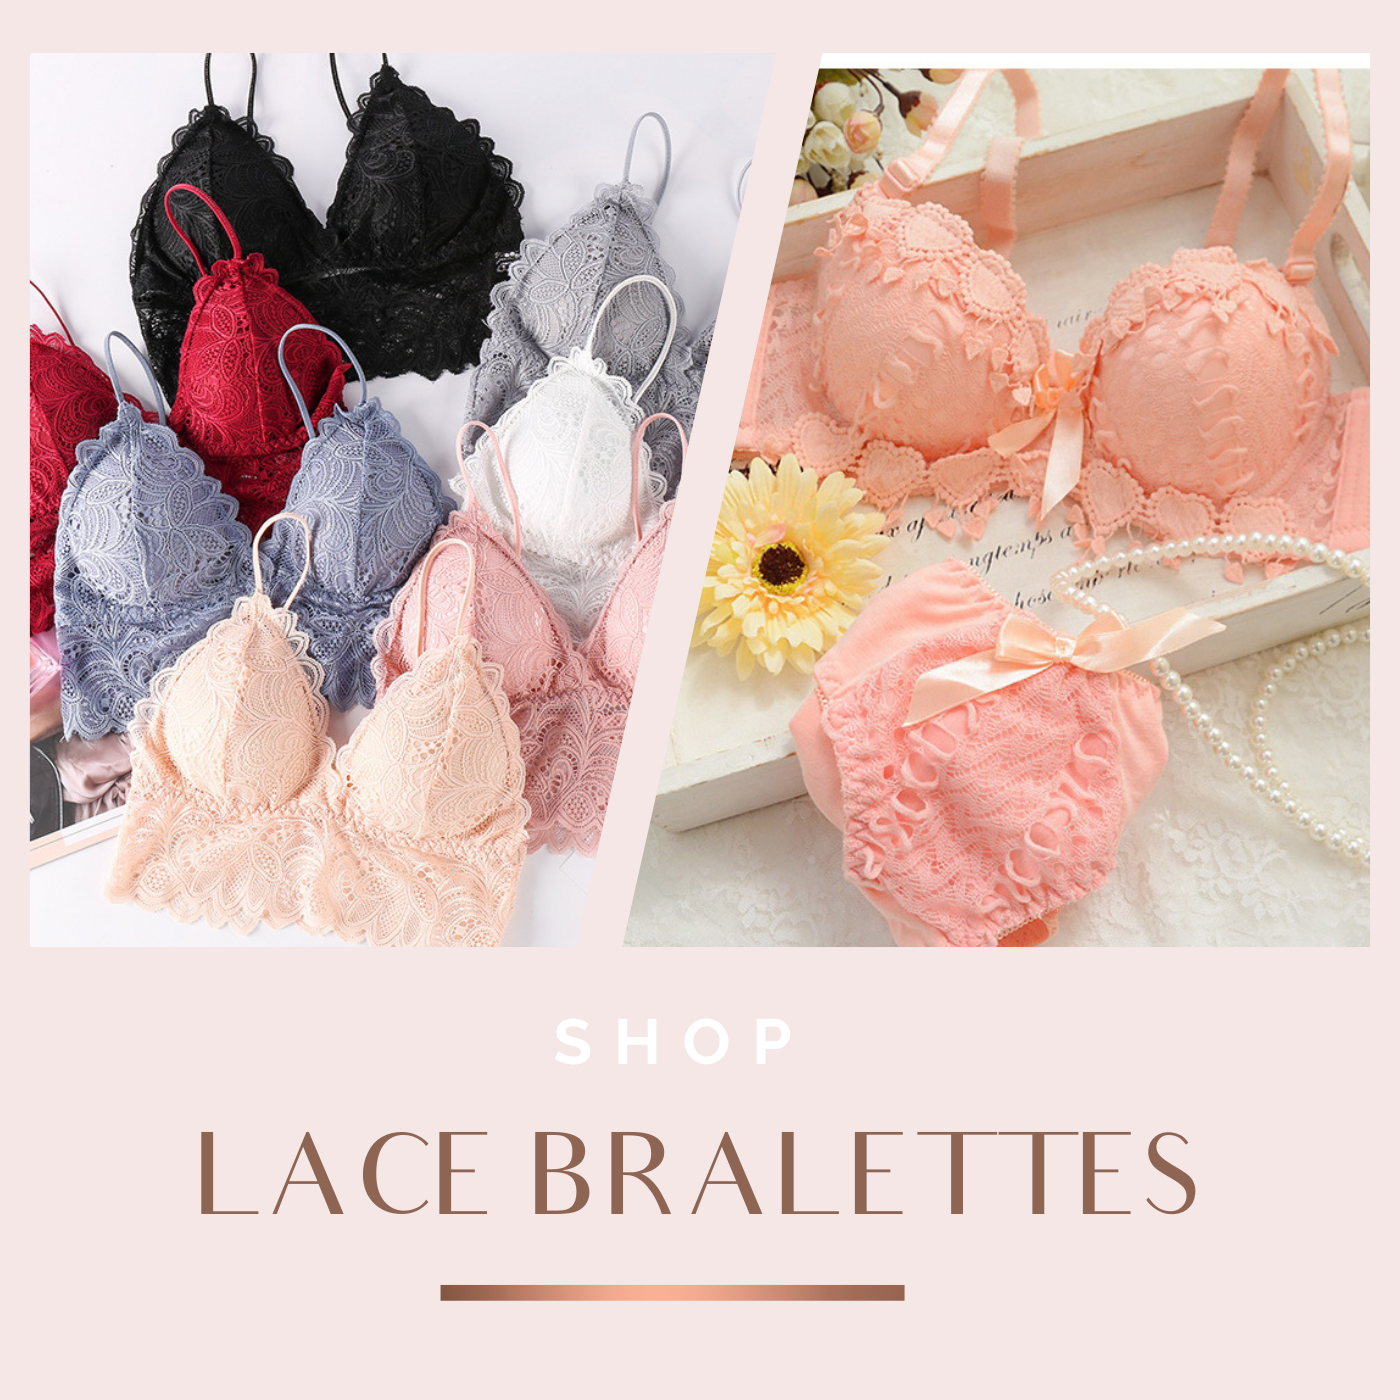 Lace Bralettes